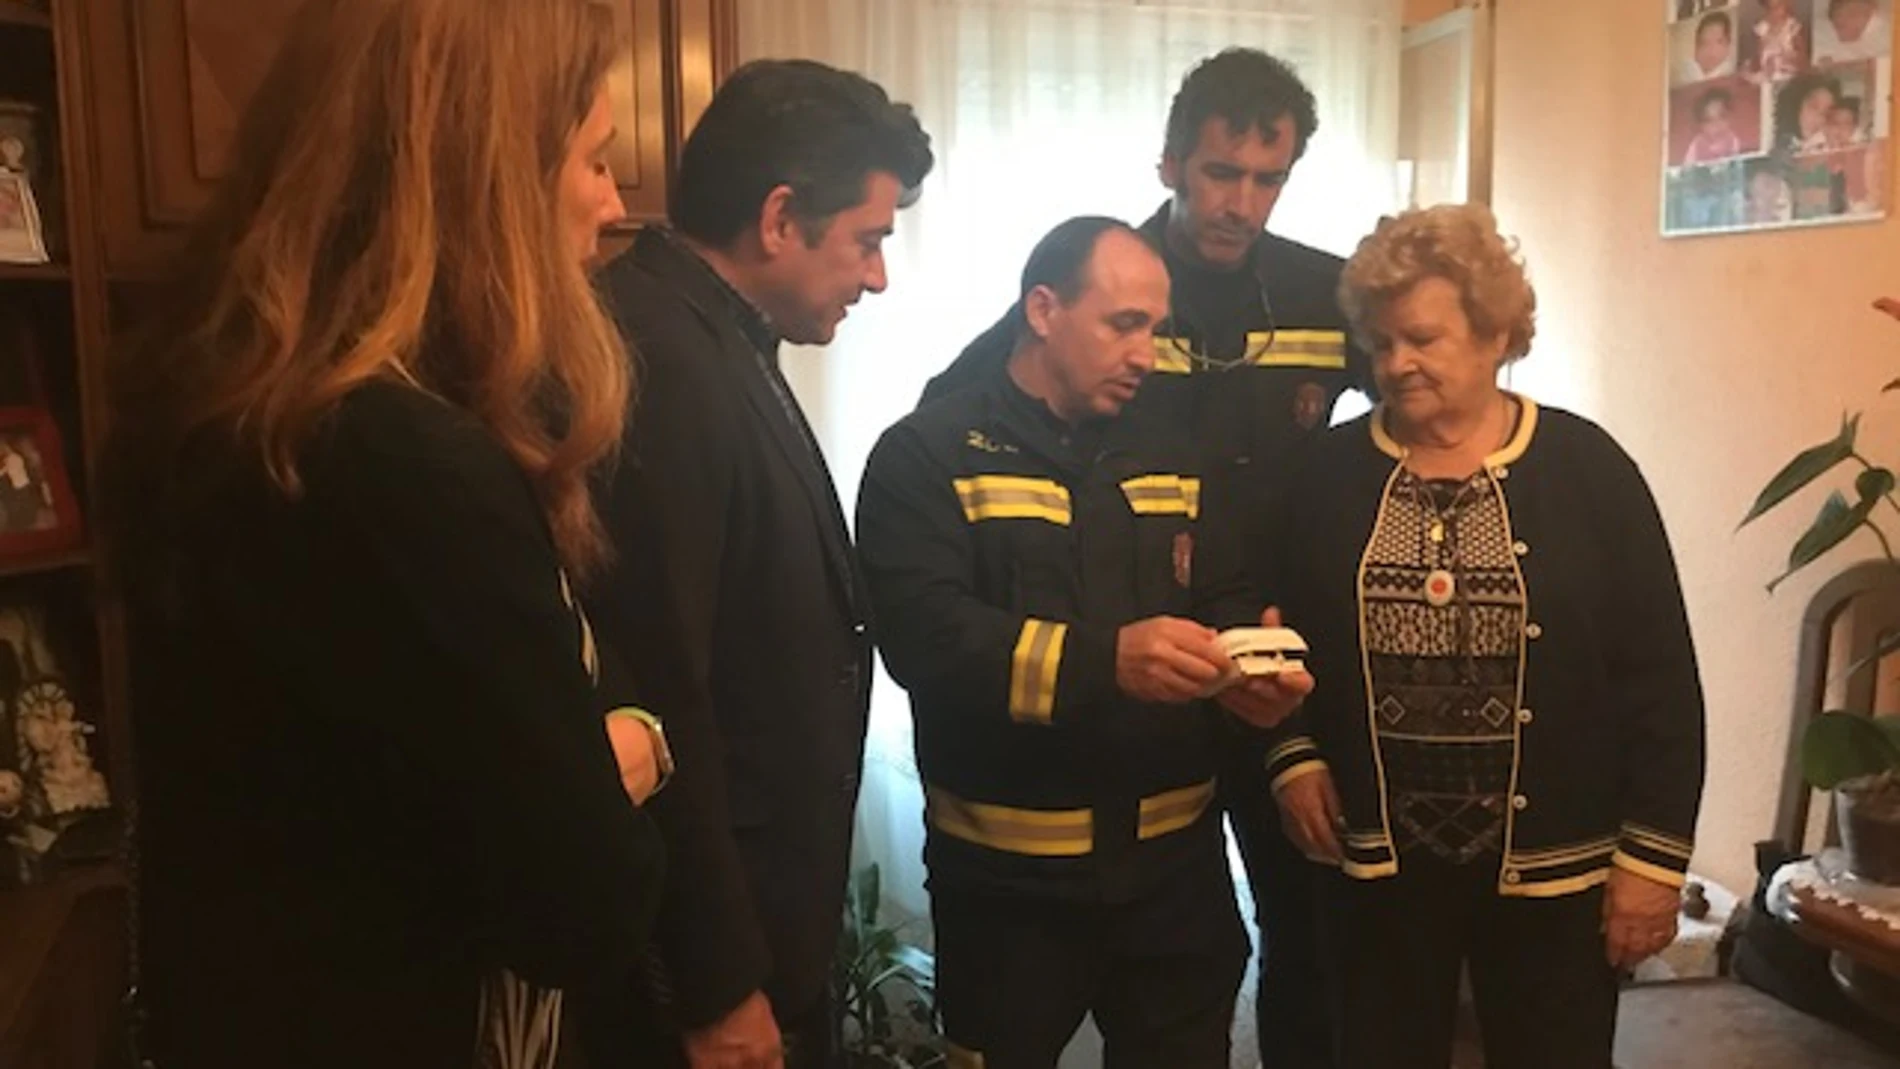 Mari Ángeles, vecina de Alcorcón, con los bomberos que le han instalado un detector de humo en su casa. En la imagen aparece también acompañada por el alcalde de Alcorcón, David Pérez y la concejala de Seguridad Ana Gomez